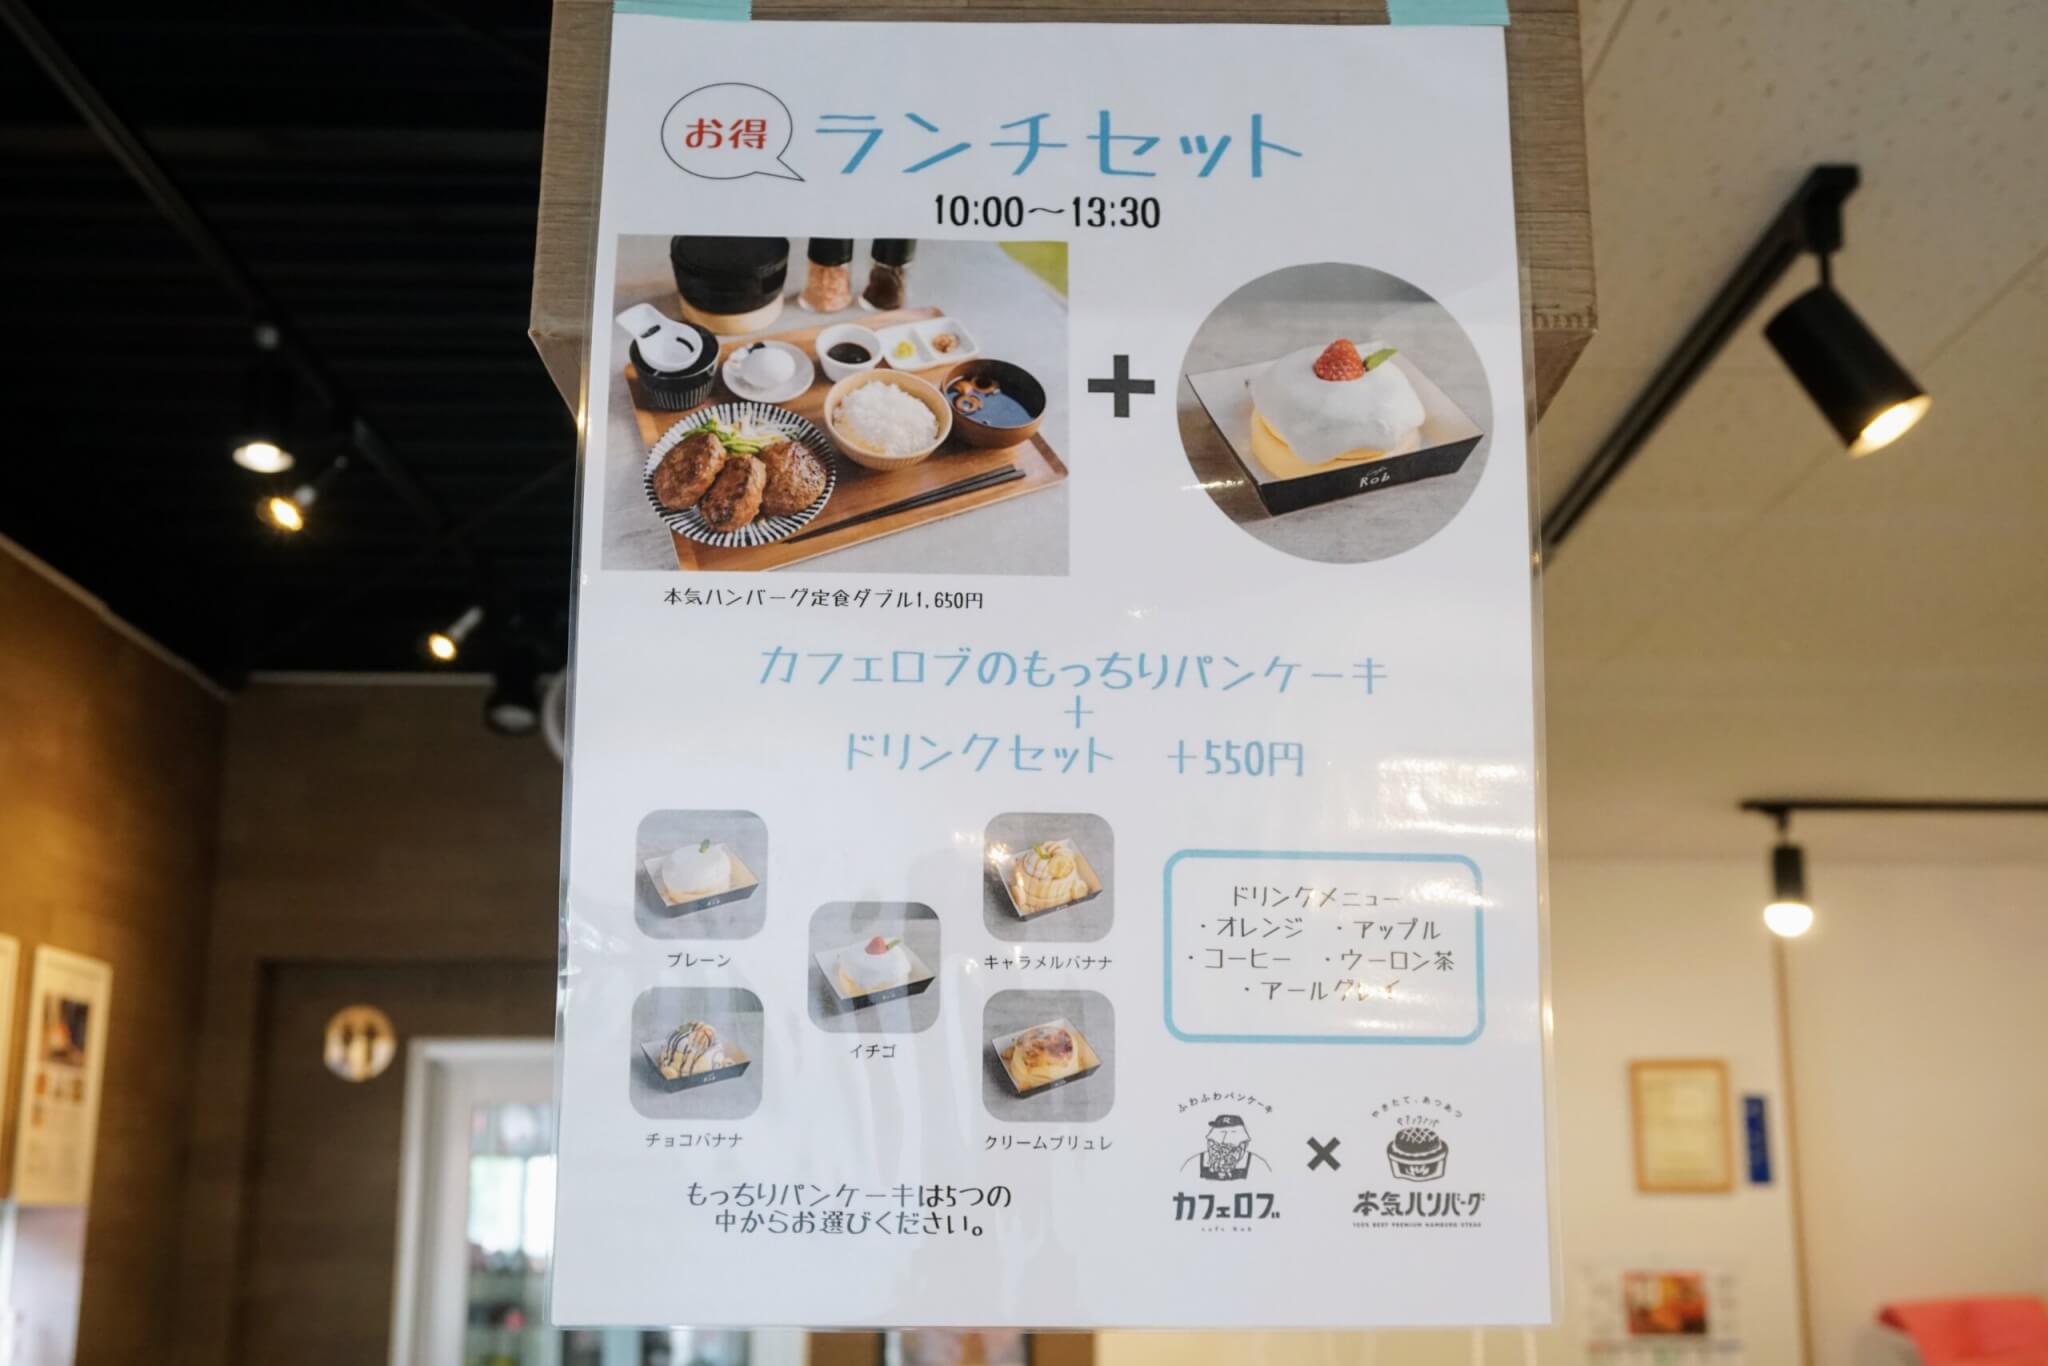 本気ハンバーグ加古川店の最近始まったお得なランチセット。ハンバーグ定食に+550円で5種類から選べるパンケーキとドリンク